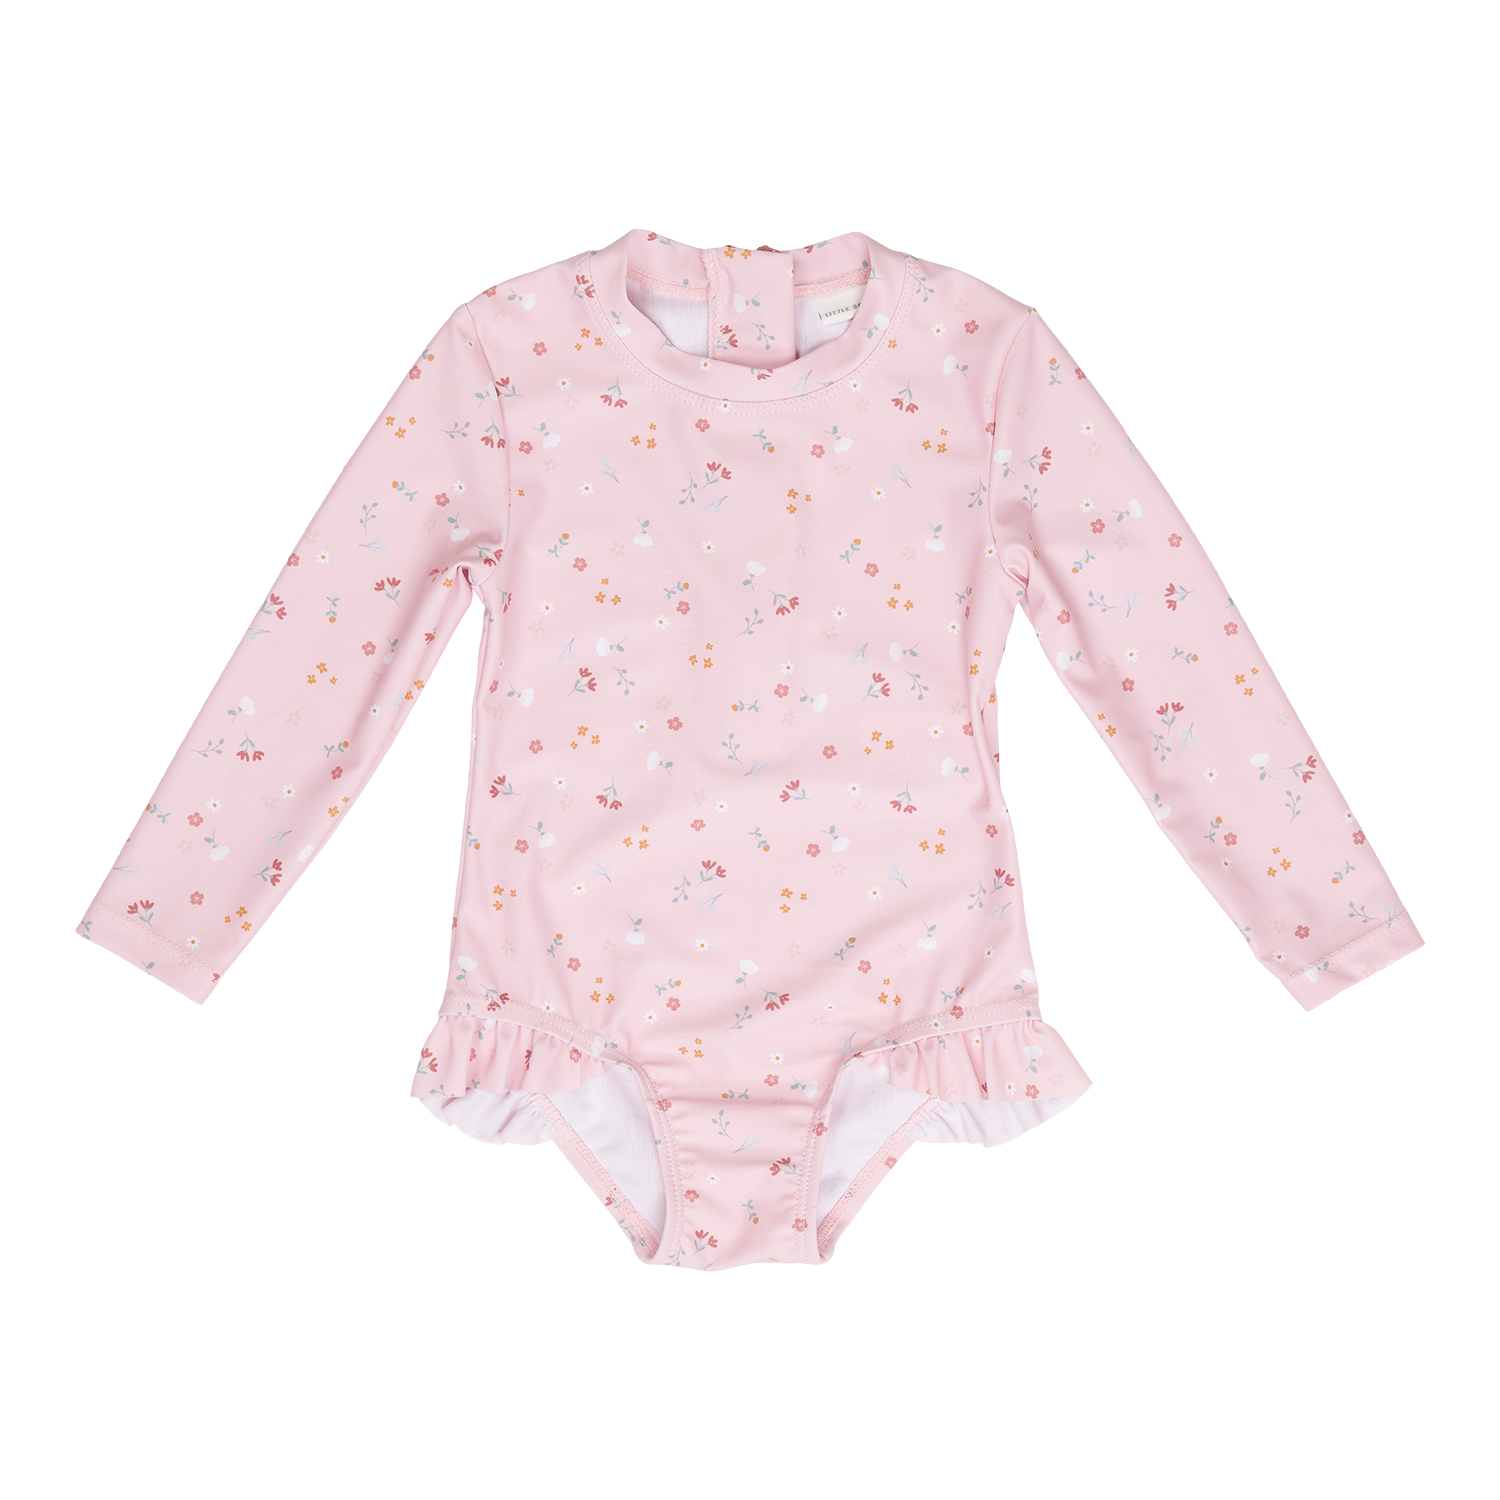 Badeanzug mit Rüschen langarm Little pink Flowers / Kleine pinke Blumen rosa (Gr. 74/80)